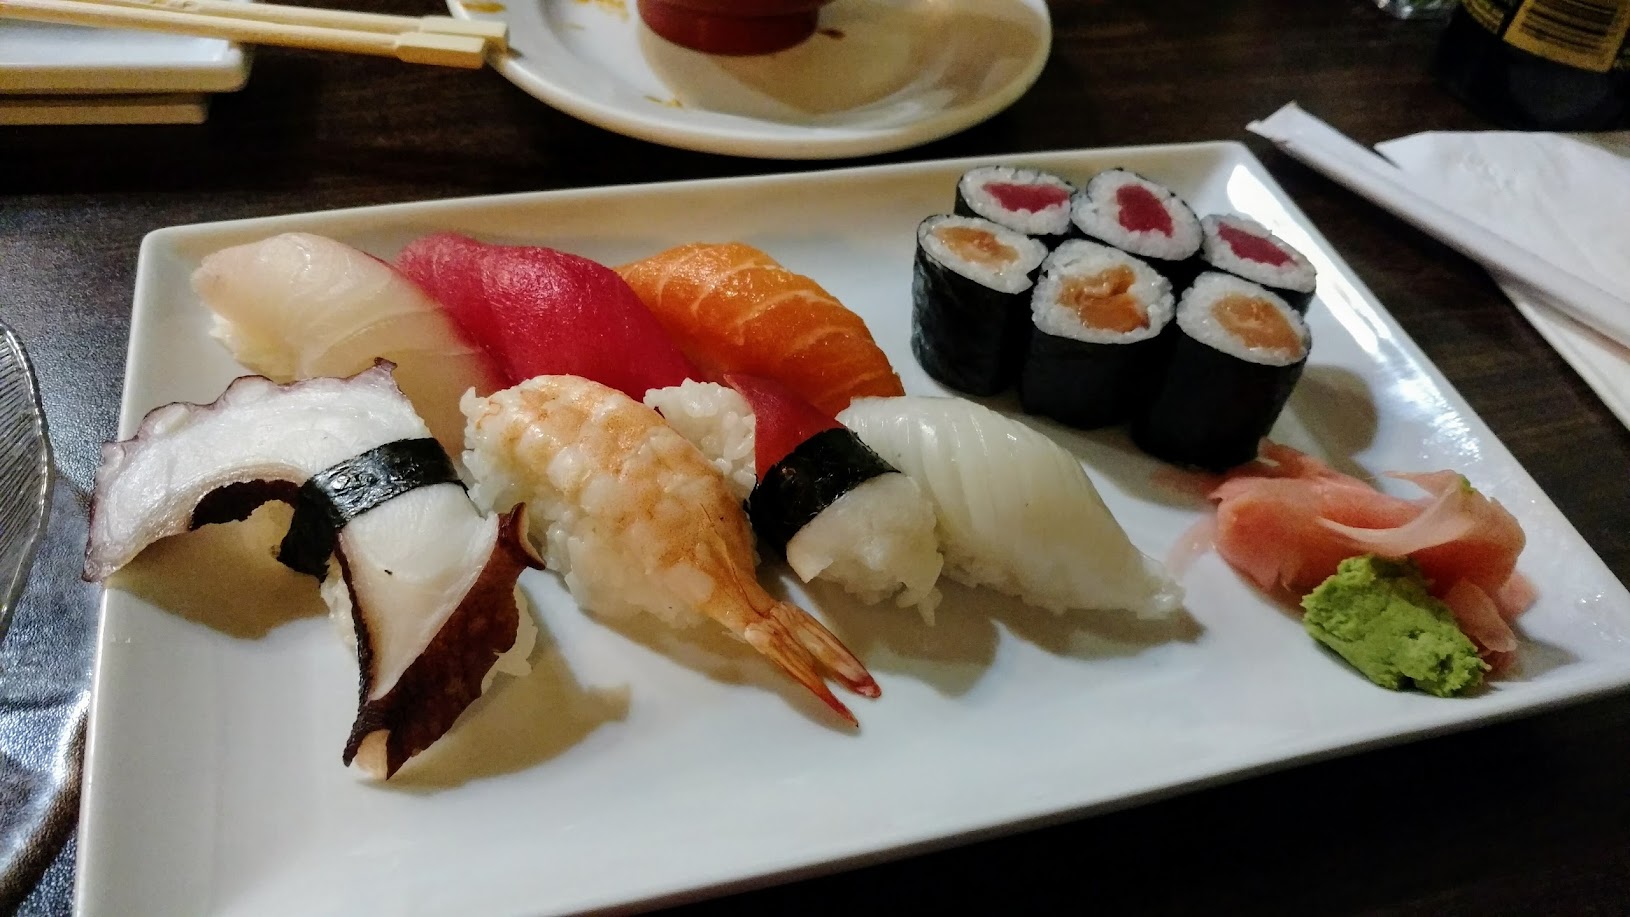 Godai Sushi Bar & Japanese Restaurant